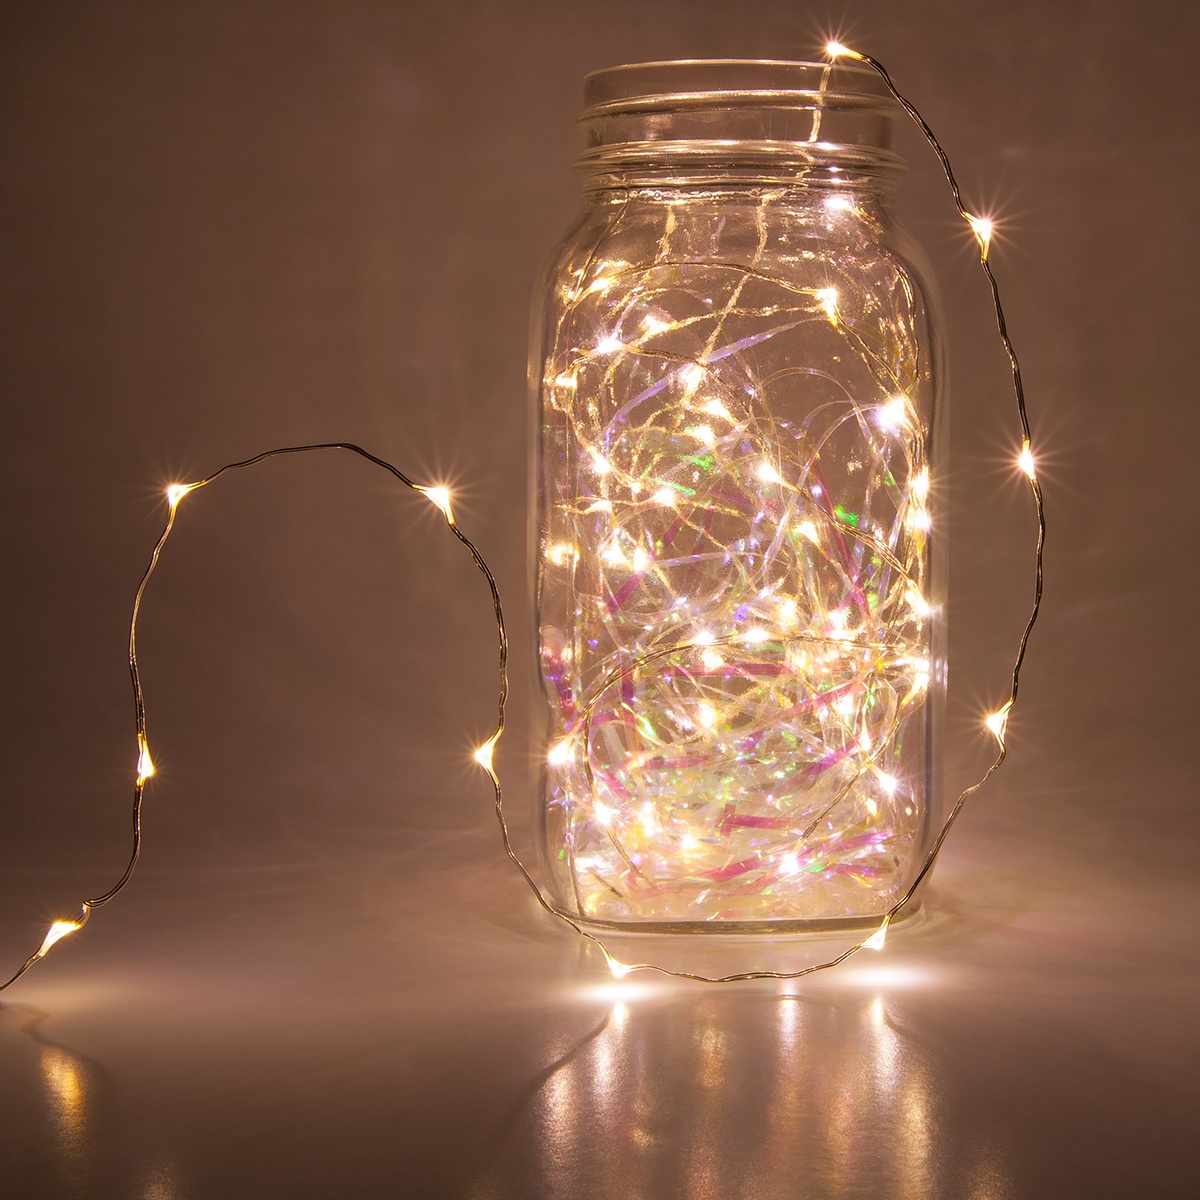 Christmas Led string fairylights inside a mason jar.